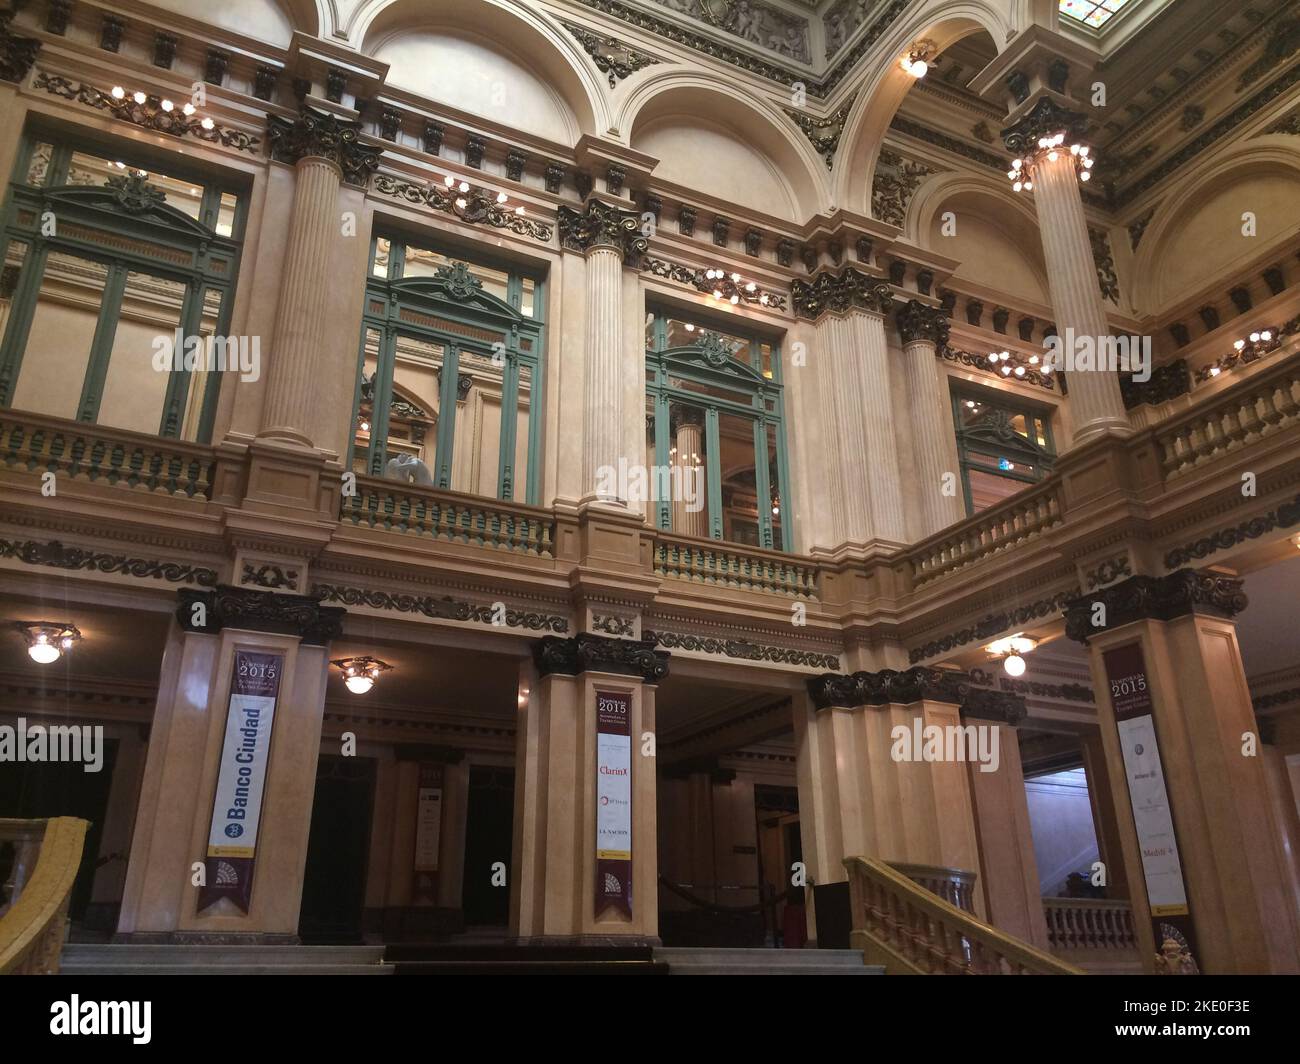 Innenansicht des Opernhauses im Teatro Colon, Buenos Aires, Argentinien Stockfoto